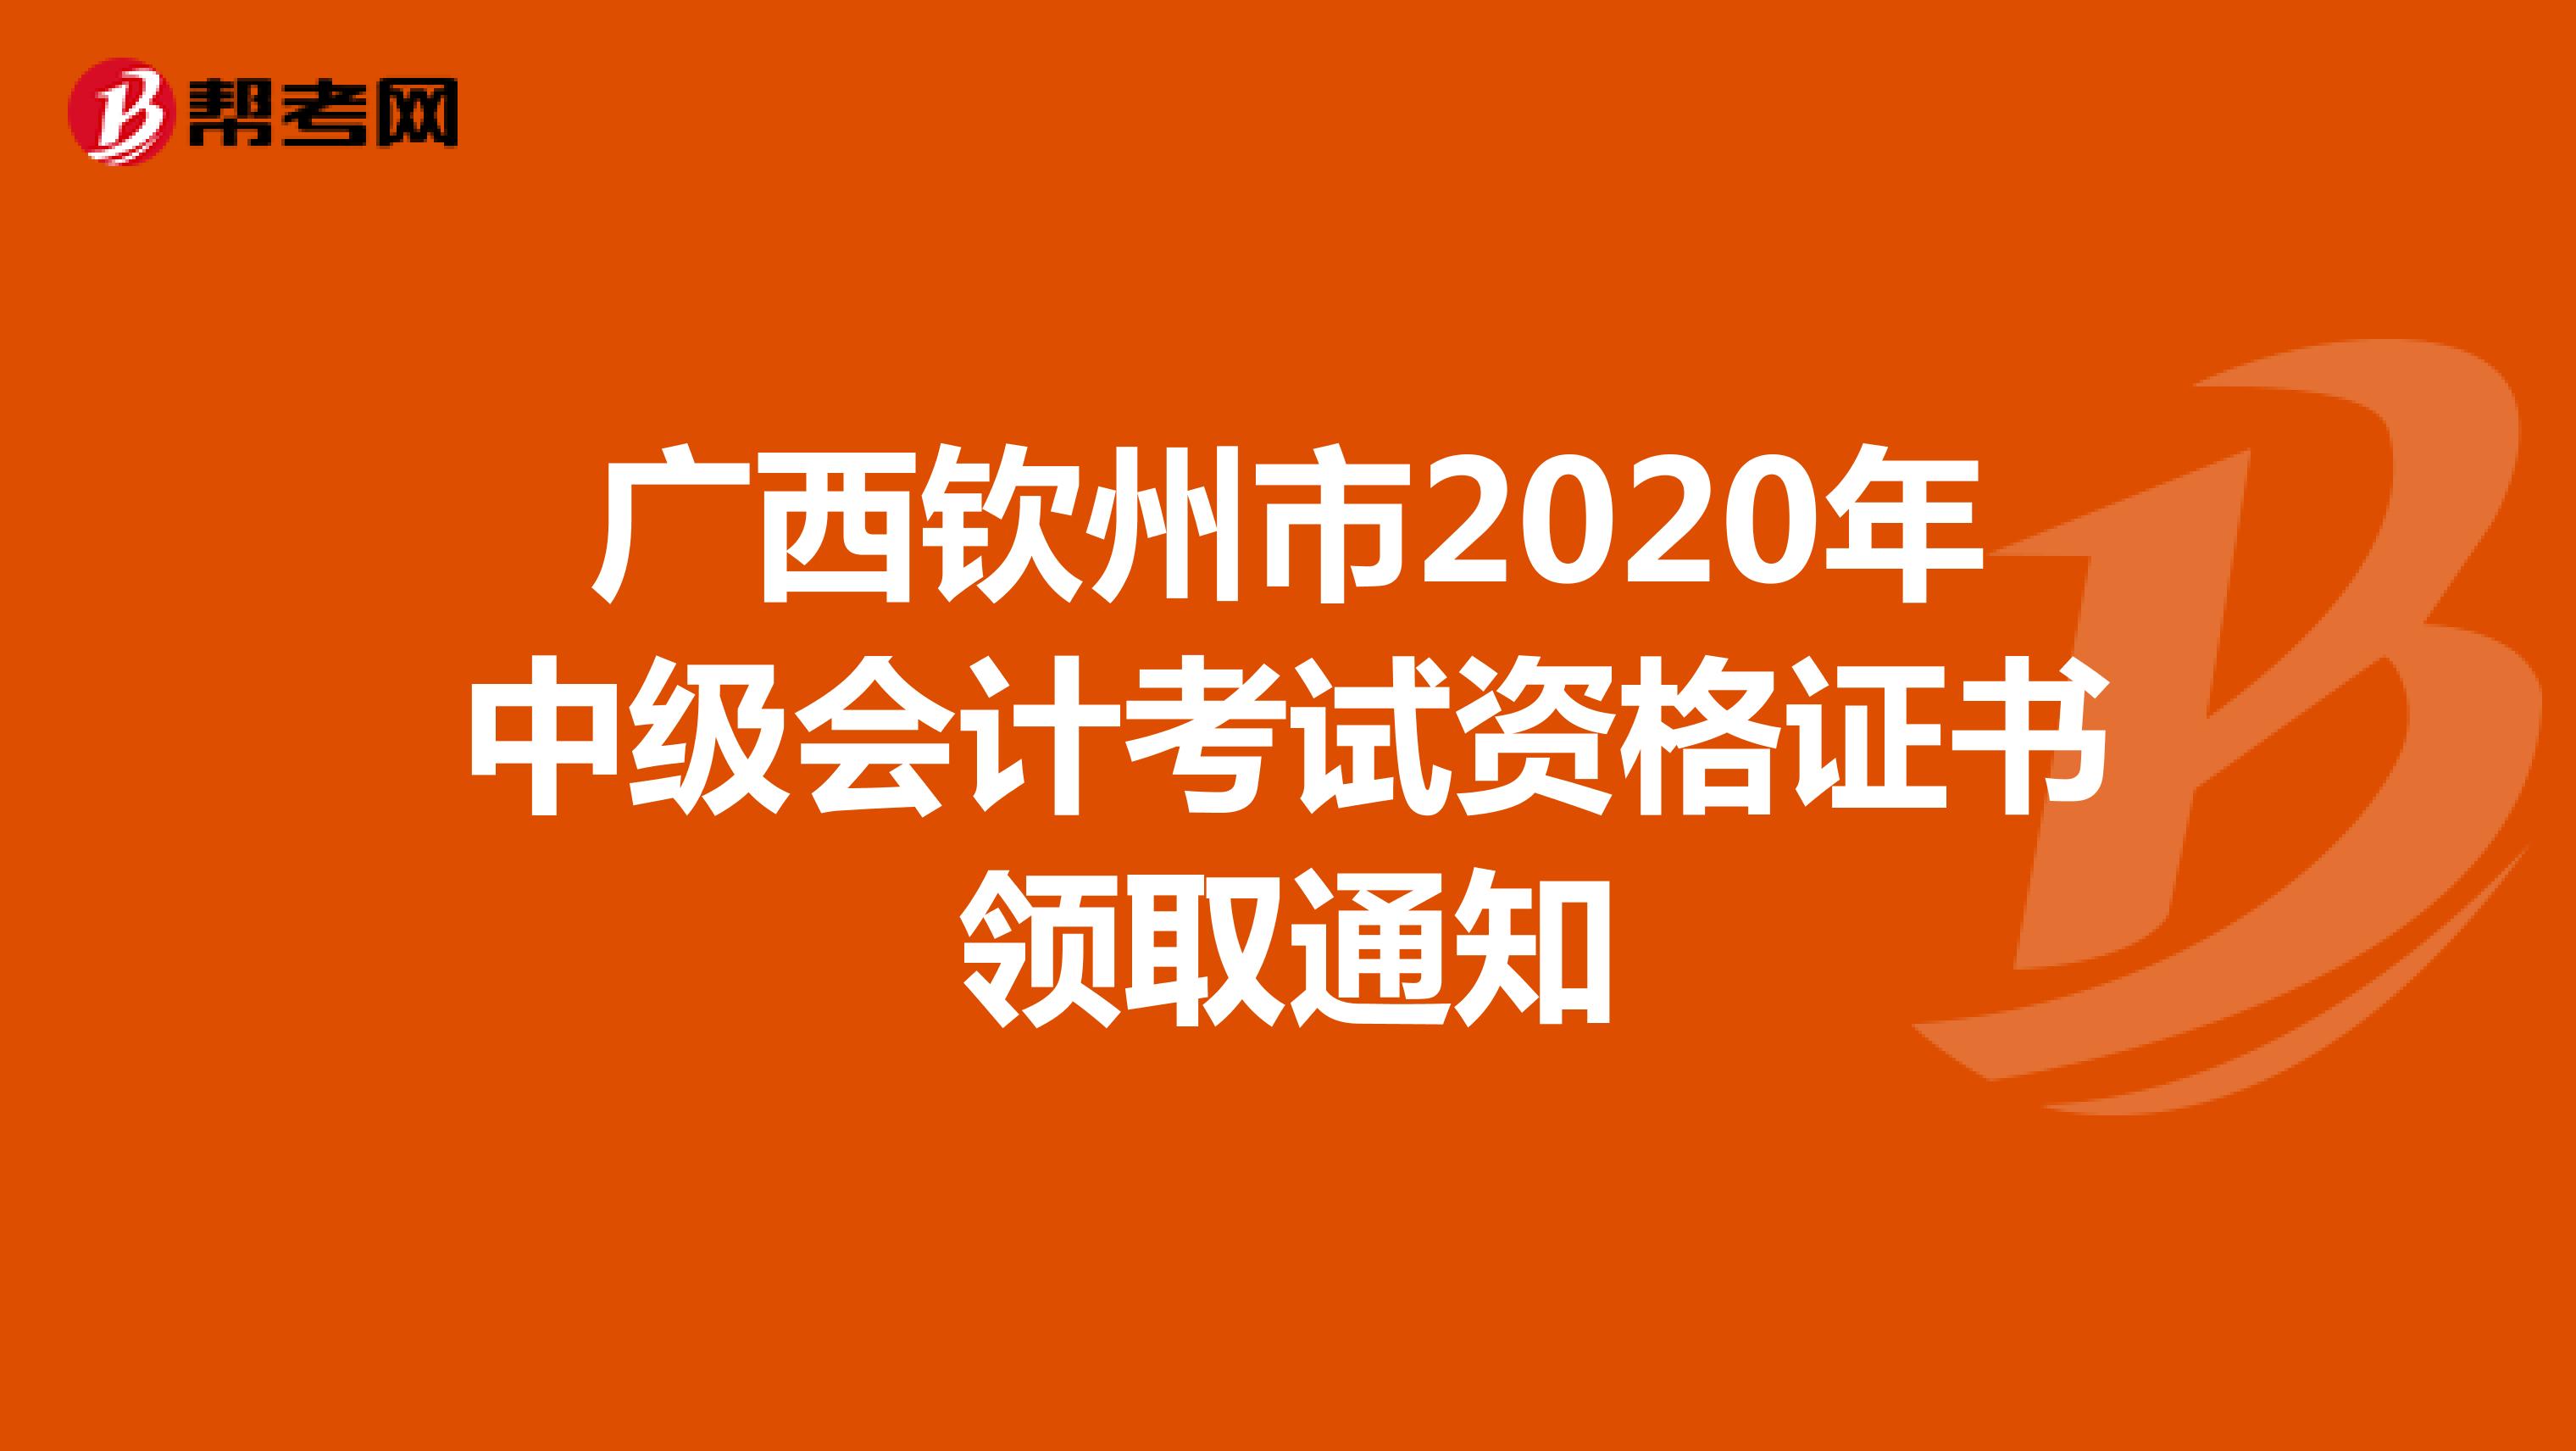 广西钦州市2020年中级会计考试资格证书领取通知